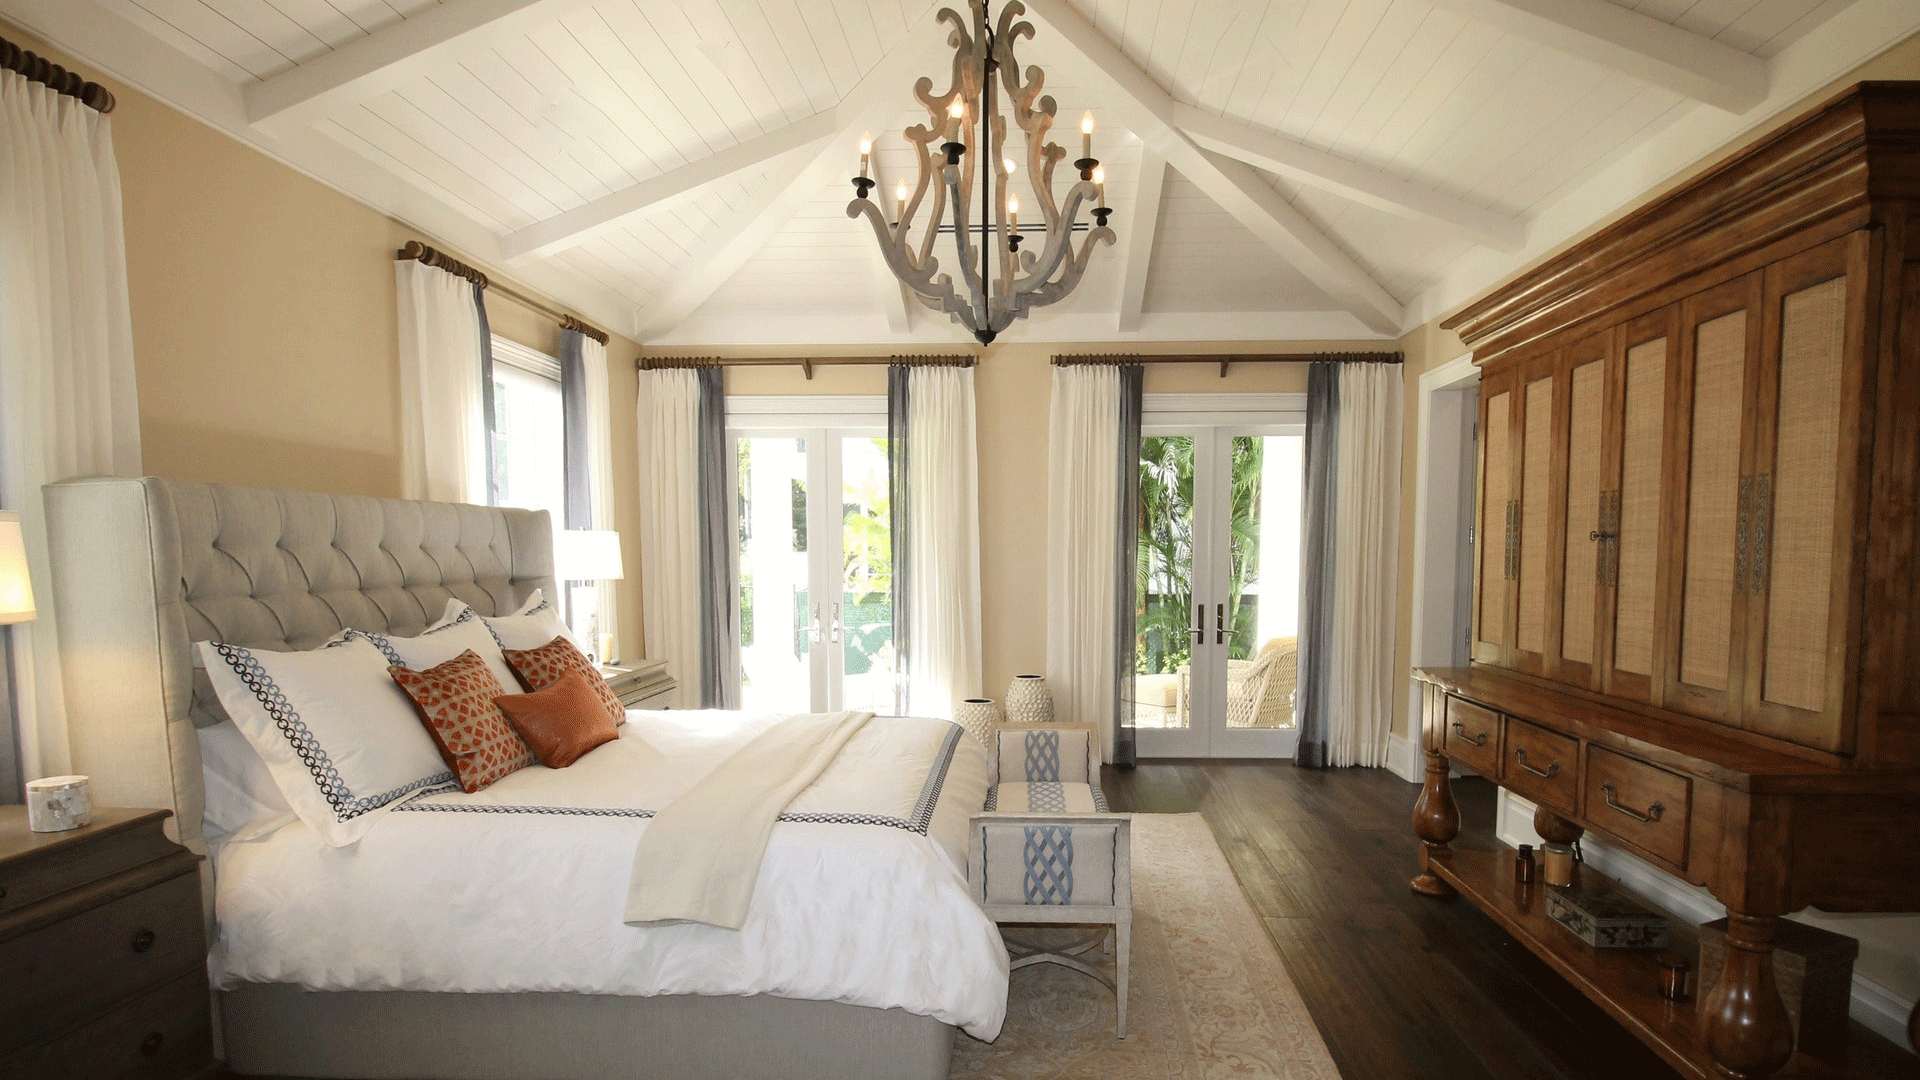 09 Dormitorio decorado al estilo vintage con techo de vigas de madera pintada